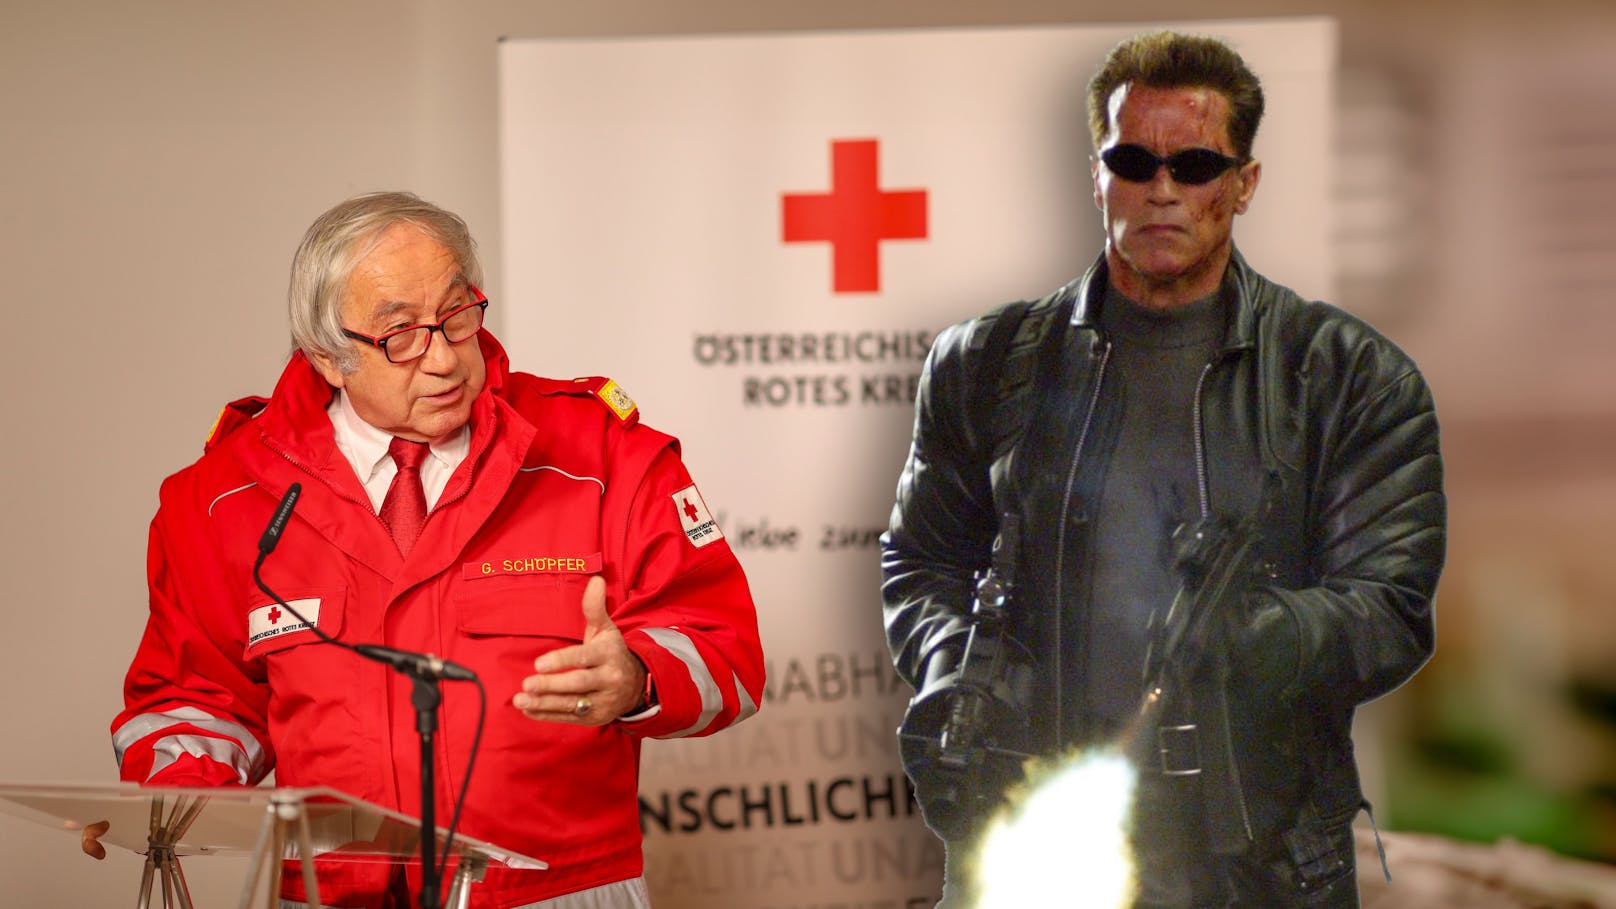 Rotkreuz-Präsident warnt vor echtem "Terminator"